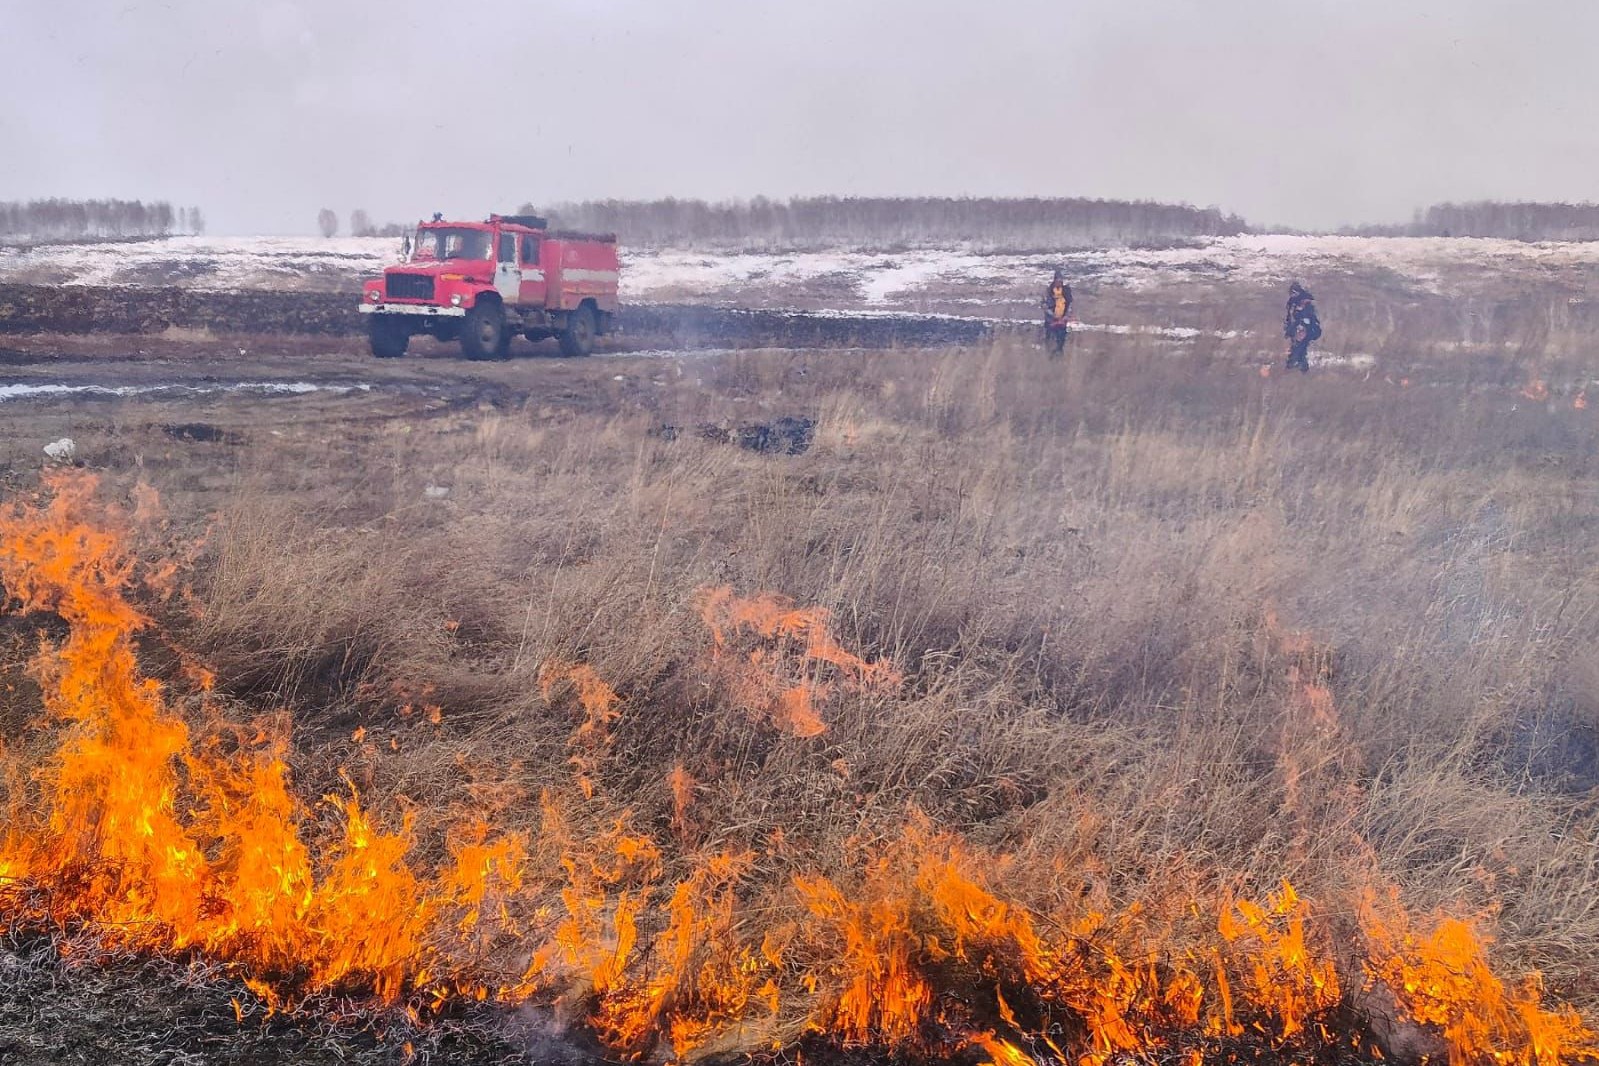 Шесть лесных пожаров потушили в Иркутской области за сутки 25 апреля